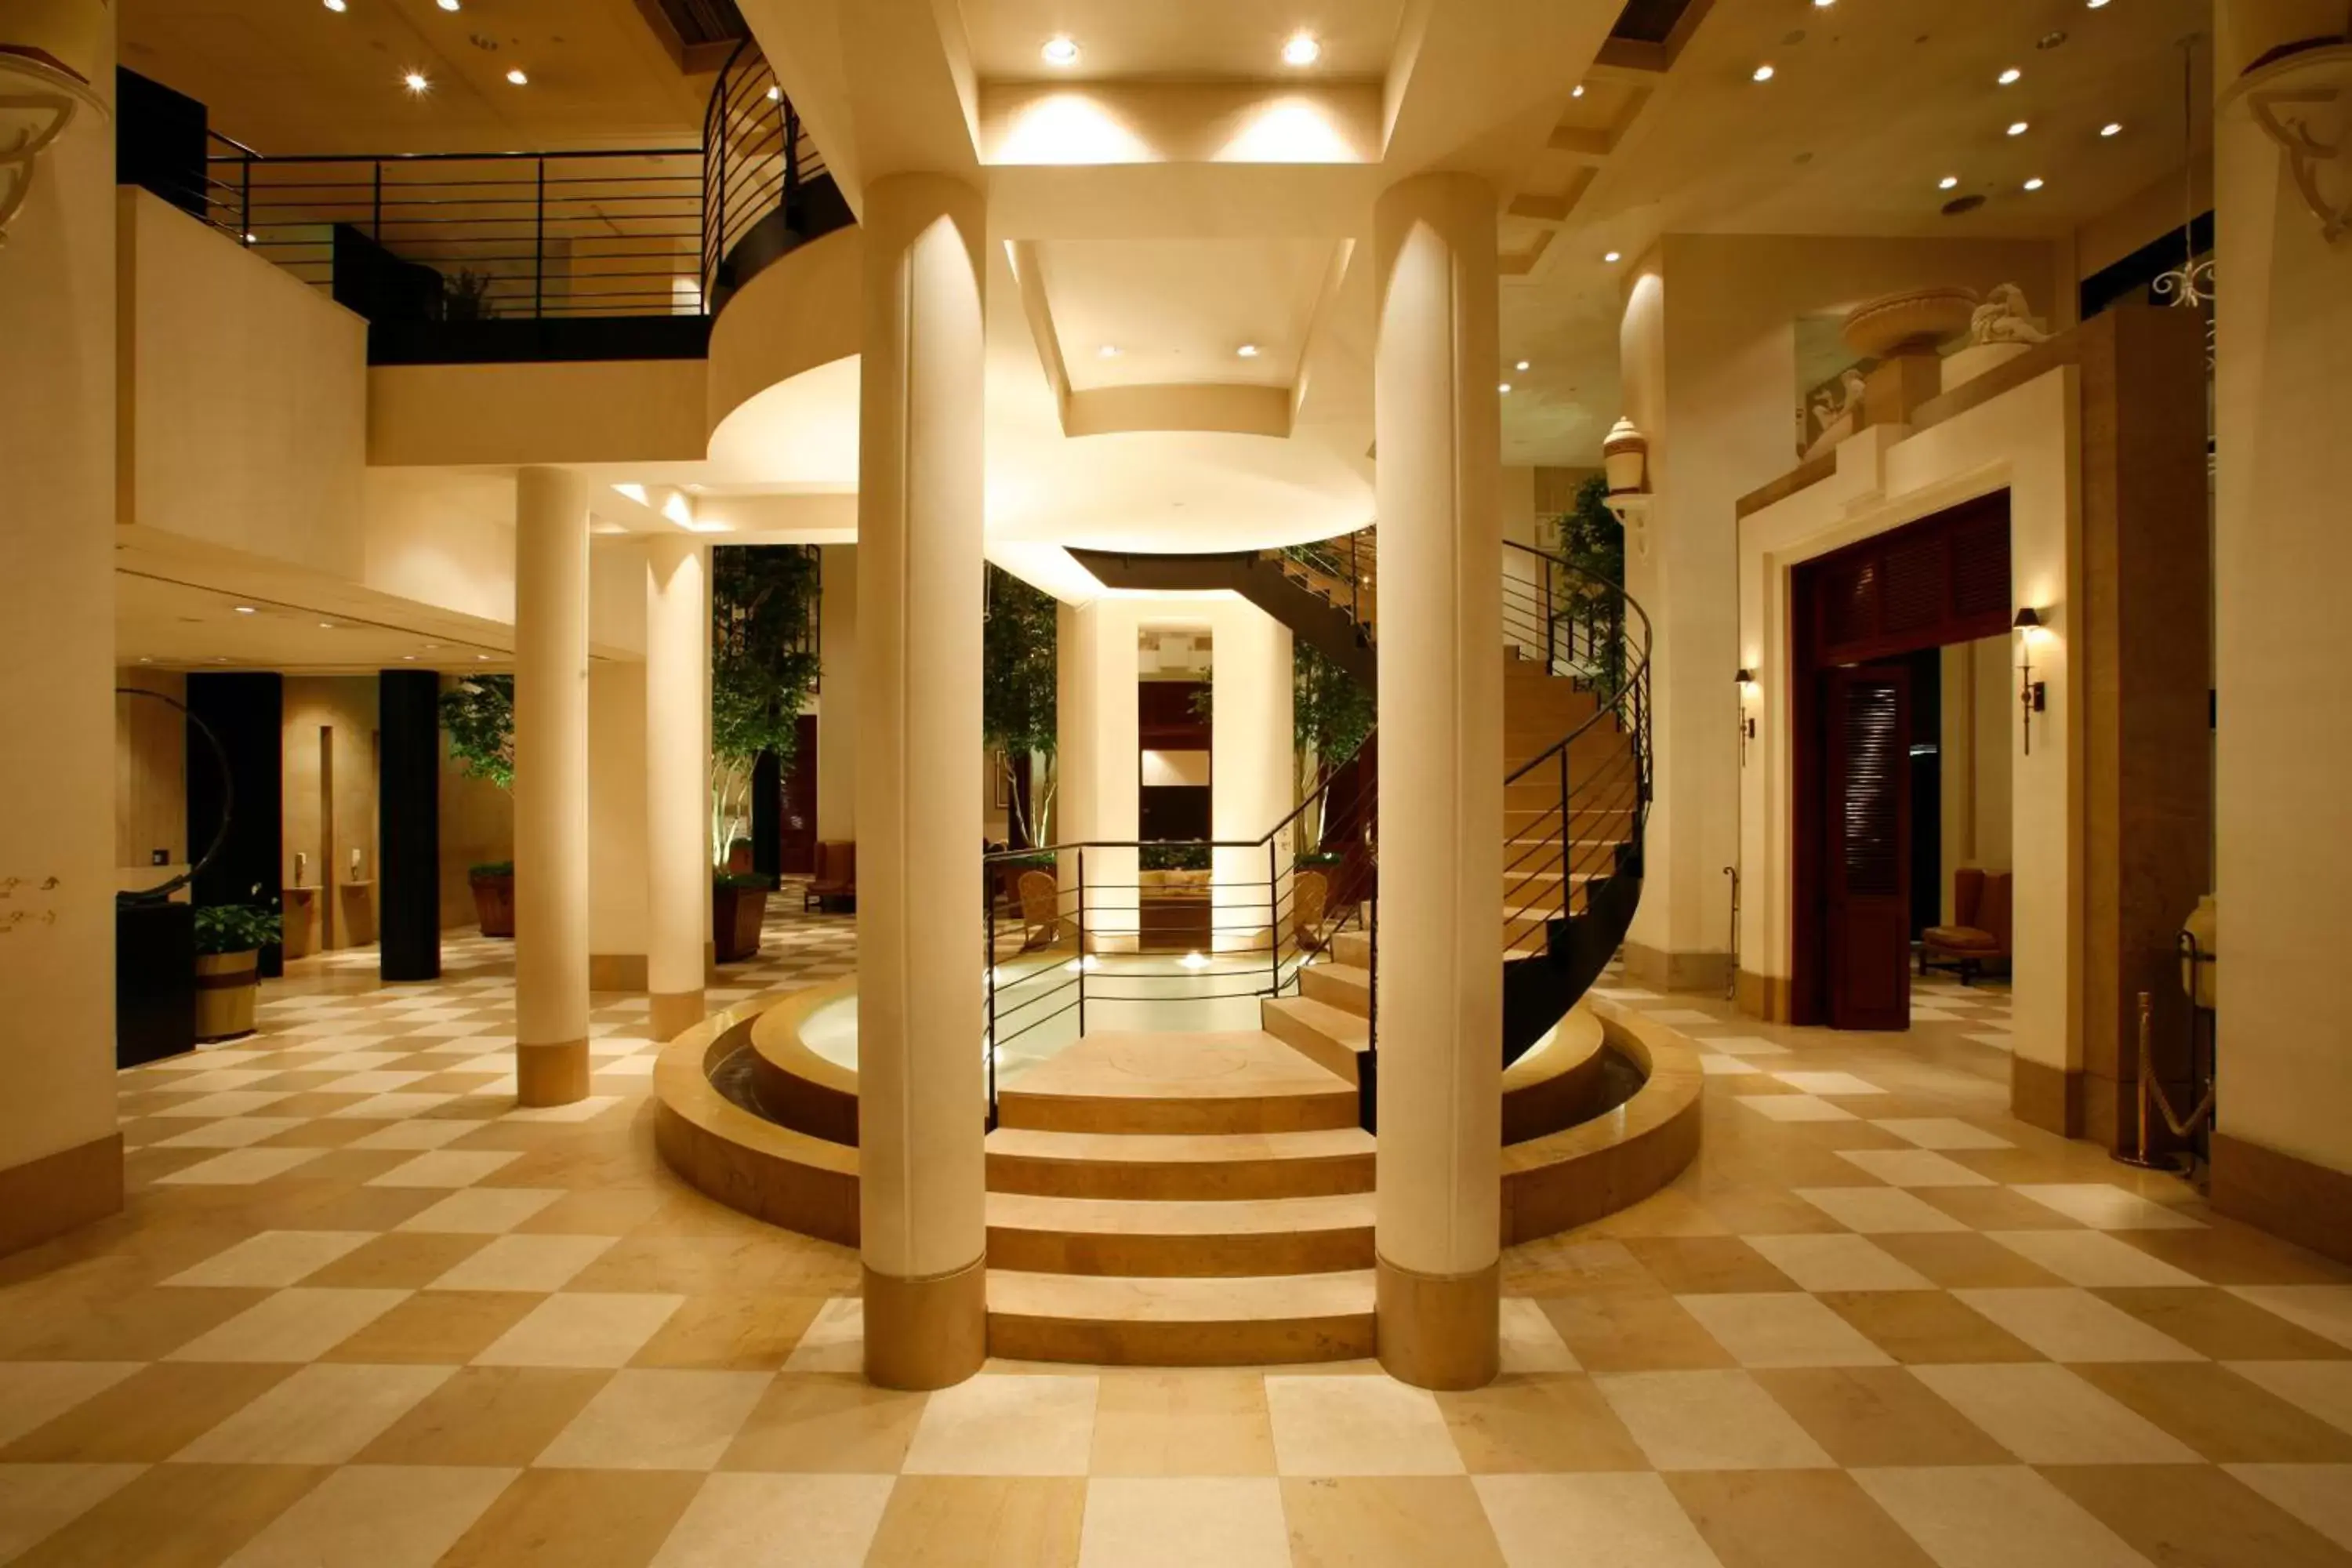 Lobby or reception, Lobby/Reception in Hotel Nikko Kanazawa